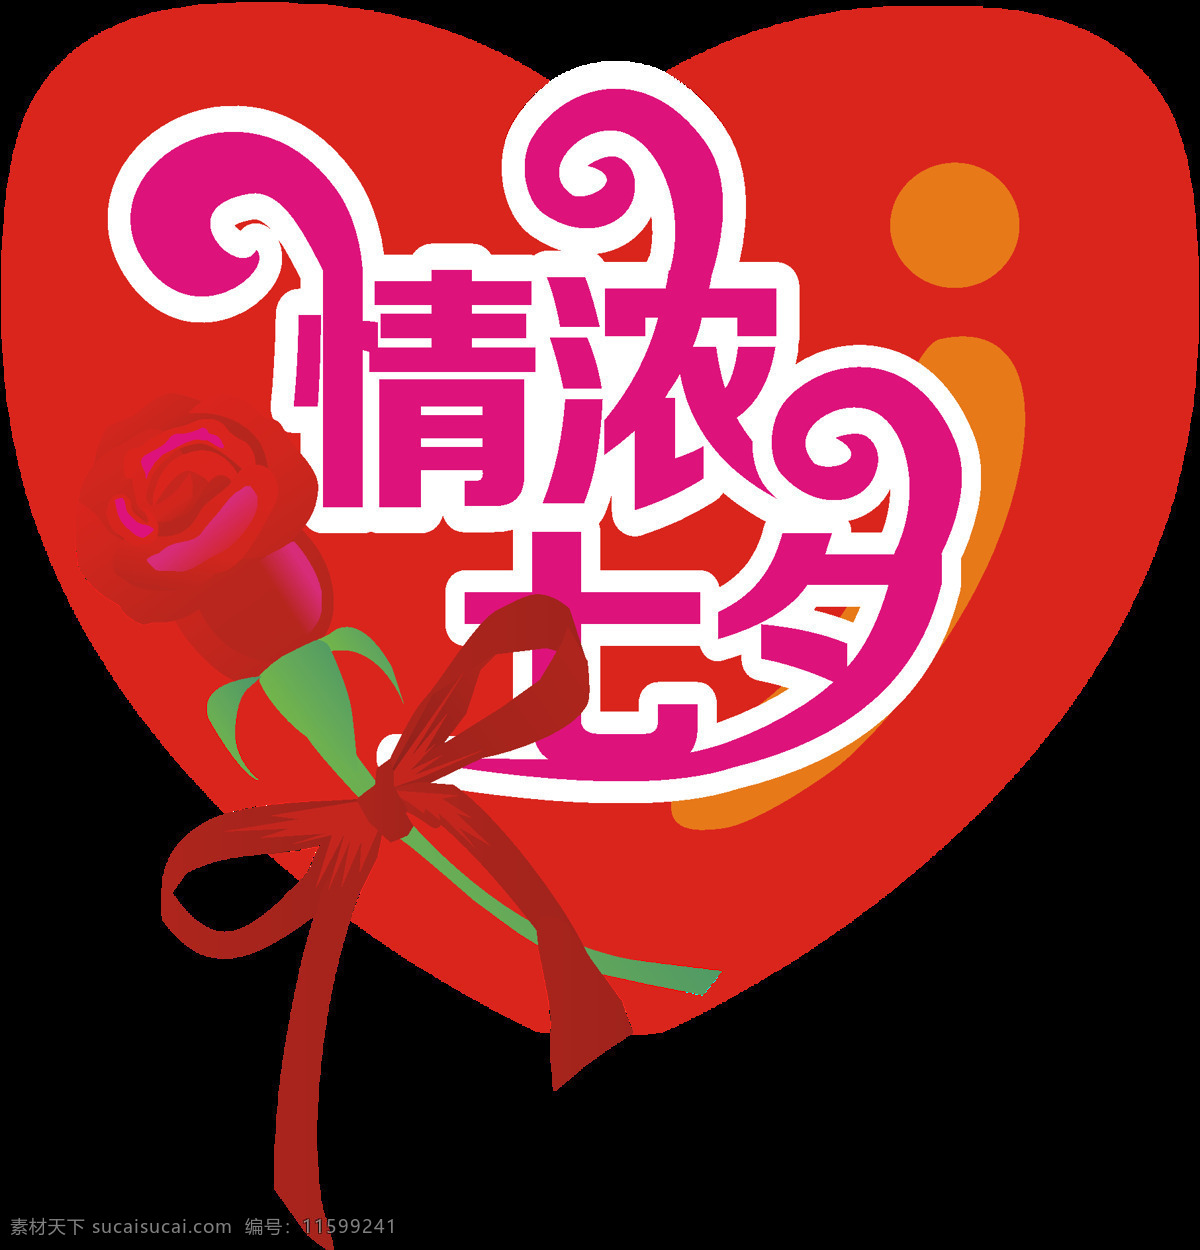 七夕 情人节 情 浓 商用 元素 心形 丝带 浪漫 玫瑰花 情意浓浓